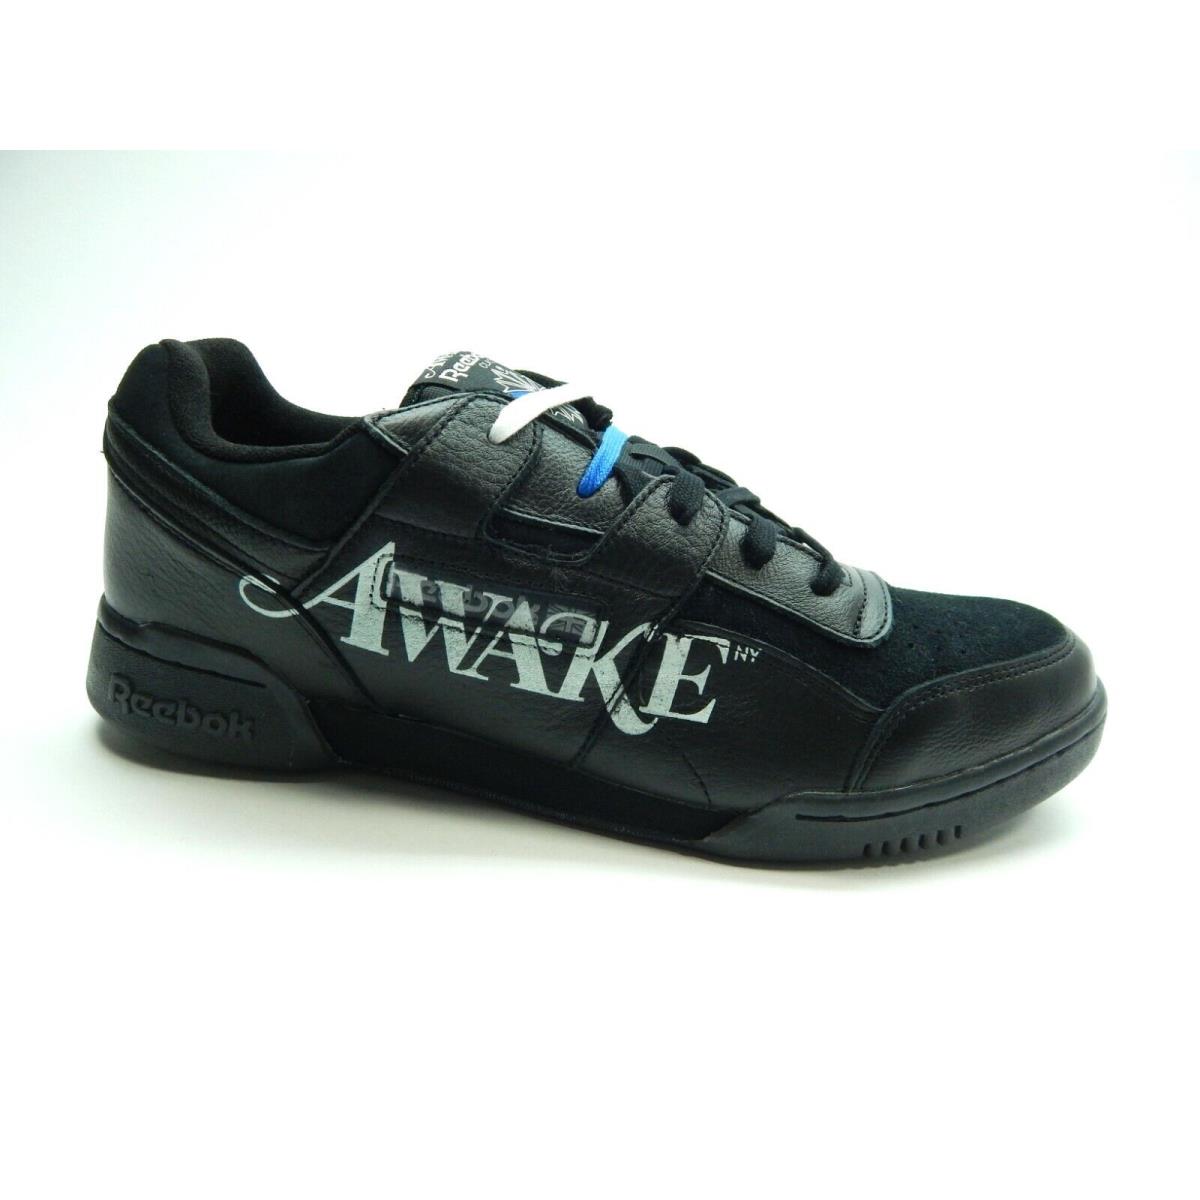 Reebok Workout Plus EG6741 Black White Men Shoes Size 13